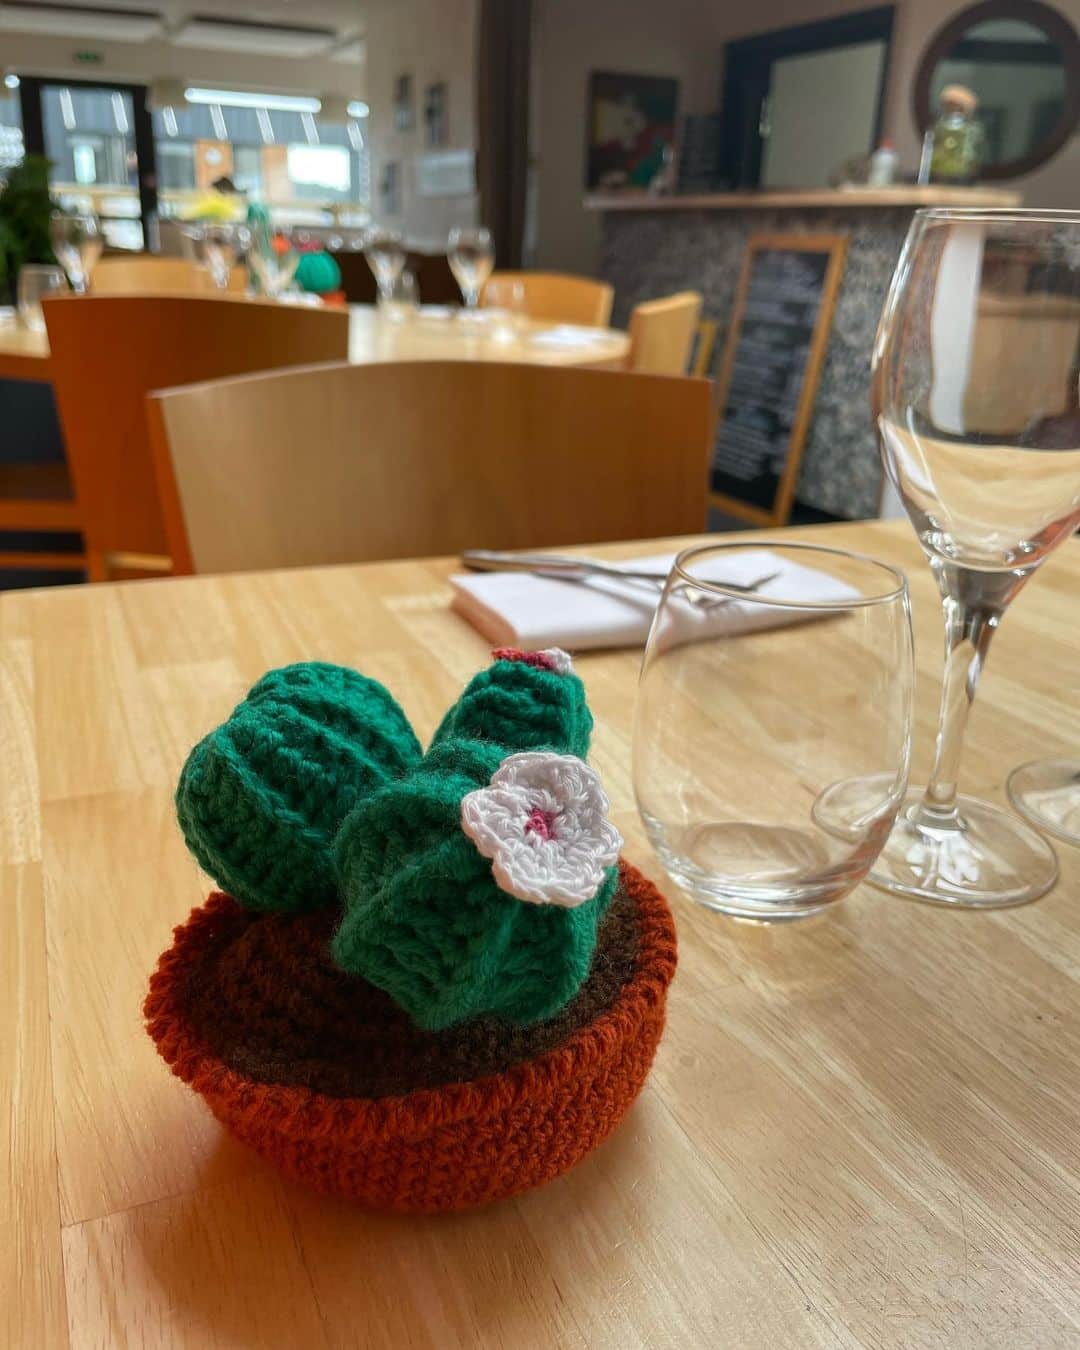 Le restaurant est ouvert cette semaine du lundi au vendredi midi et soir, fermé mardi soir.
Nous sommes fermés exceptionnellement samedi et dimanche . #lepotdebeurre #landeda #laberwrach #paysdesabers #restaurant #decoenlaine #cactus #crochet